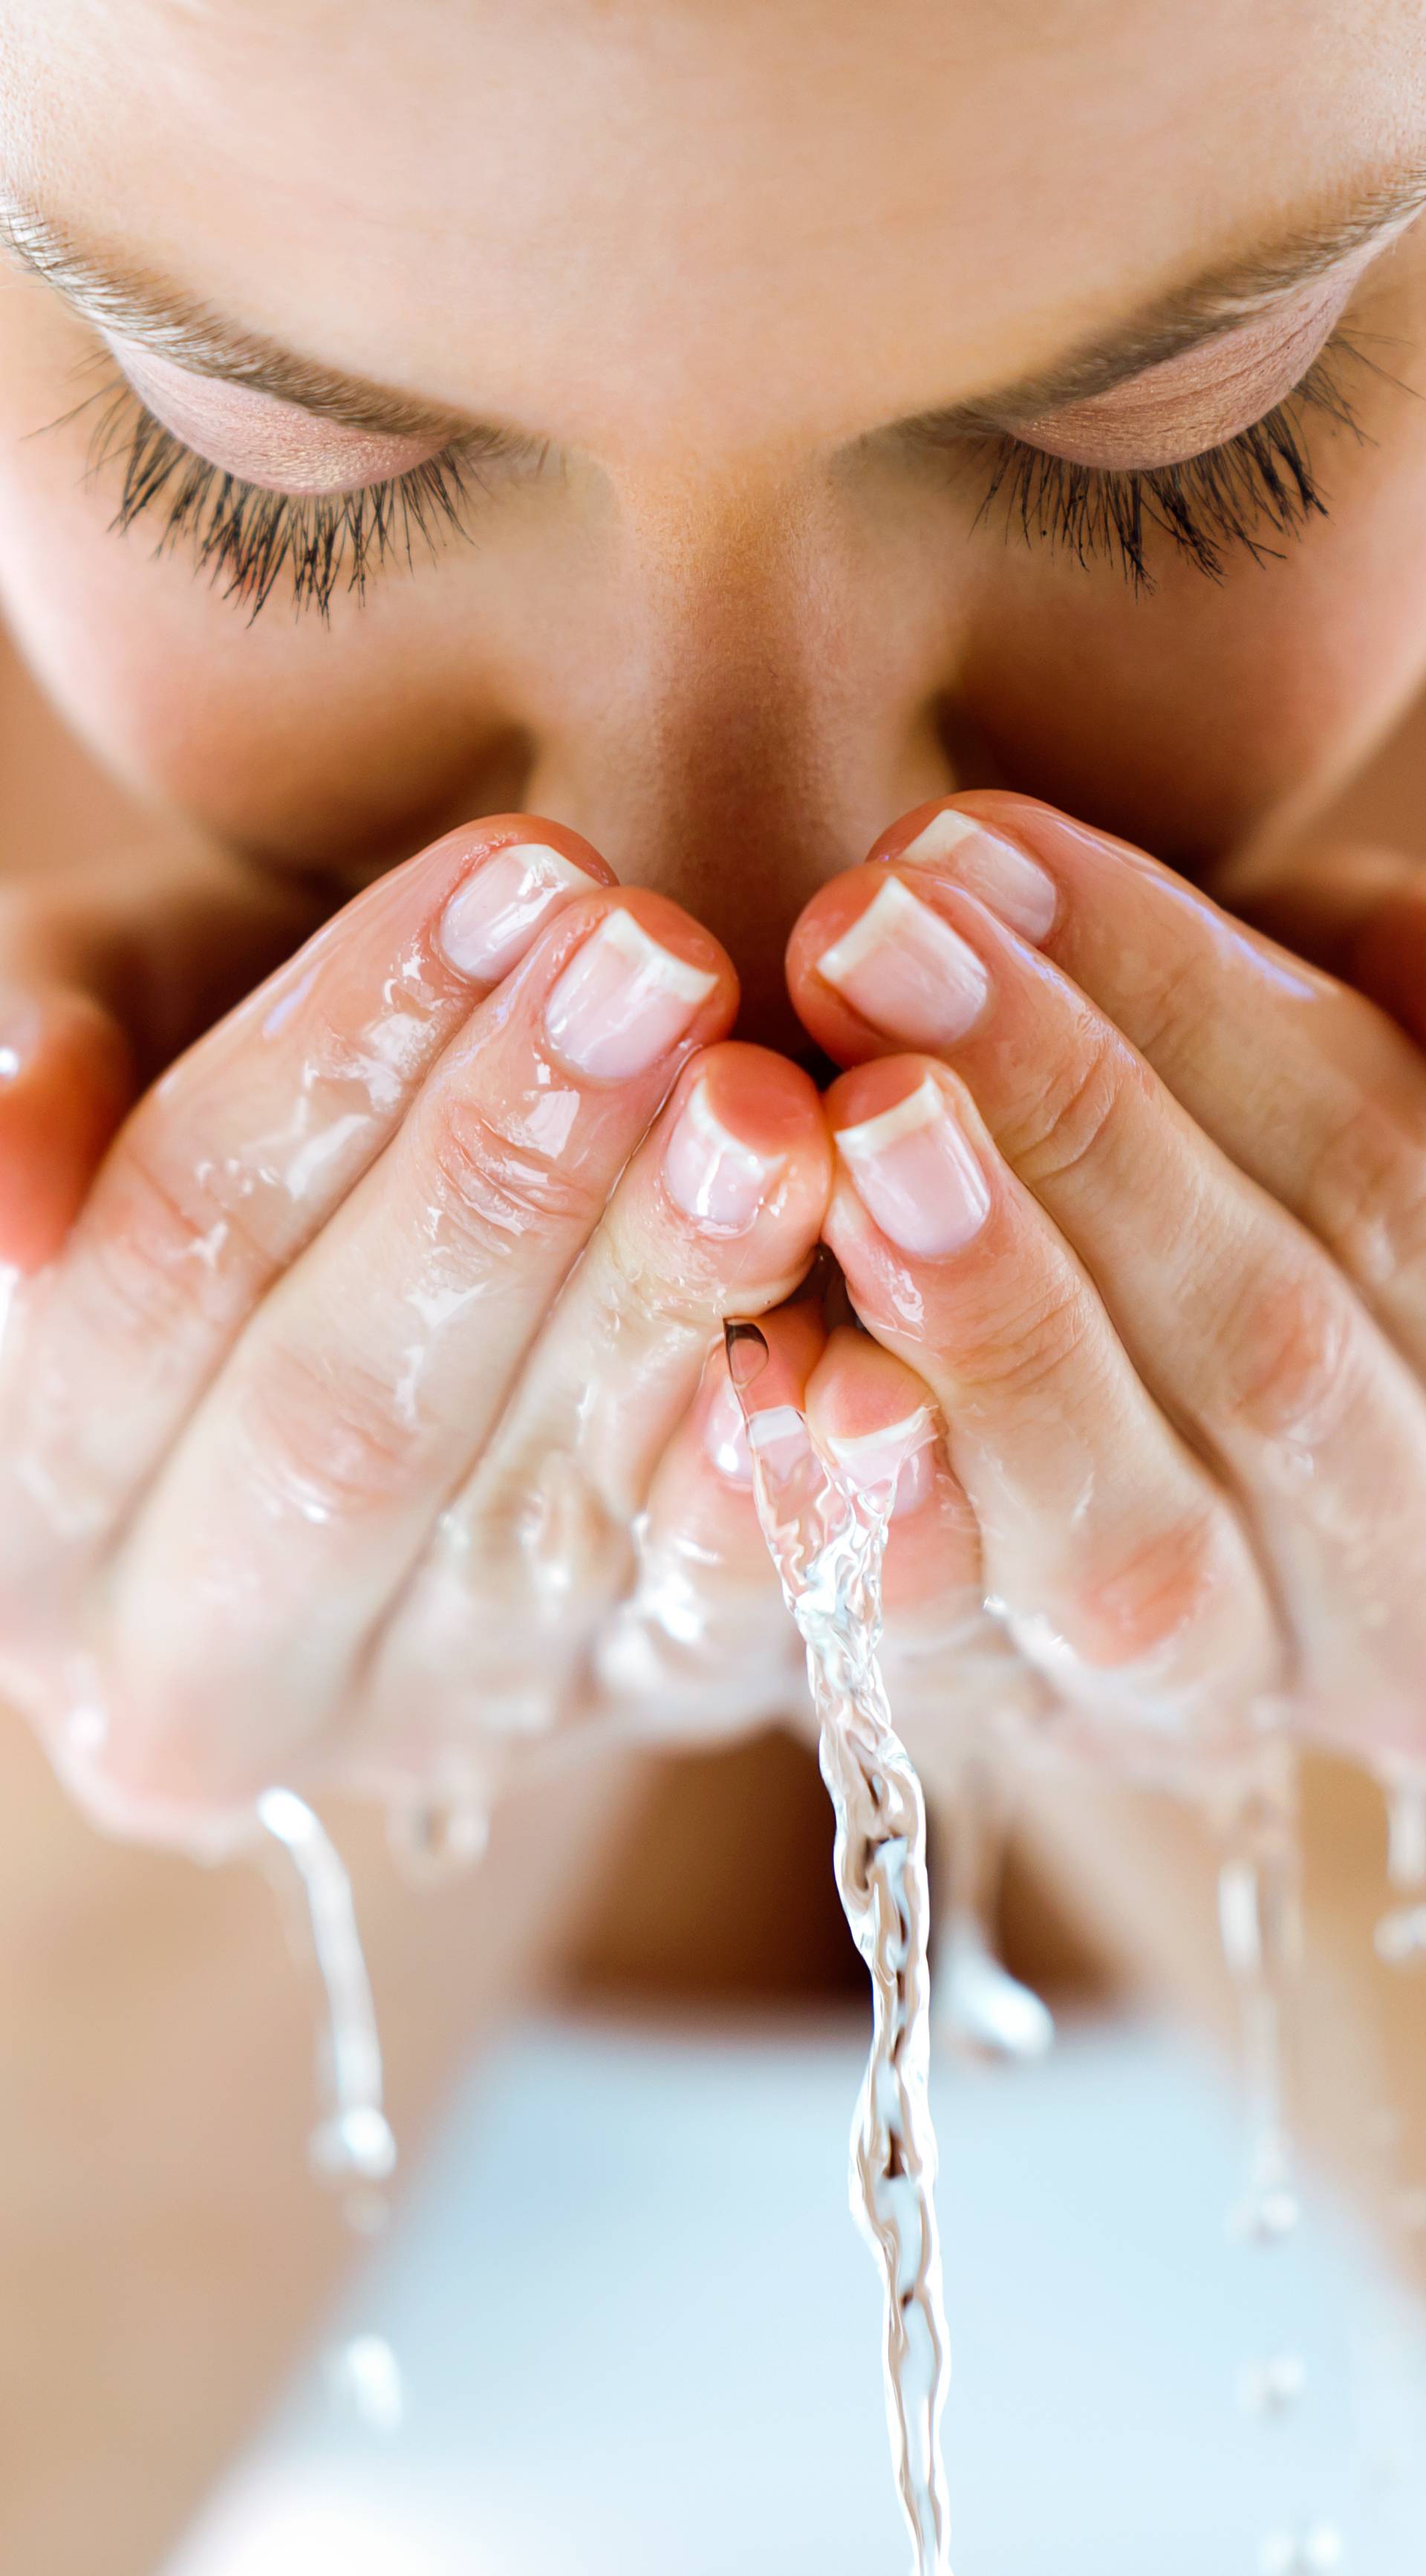 Masnu kožu lica morate čistiti ujutro i navečer i hidratizirati